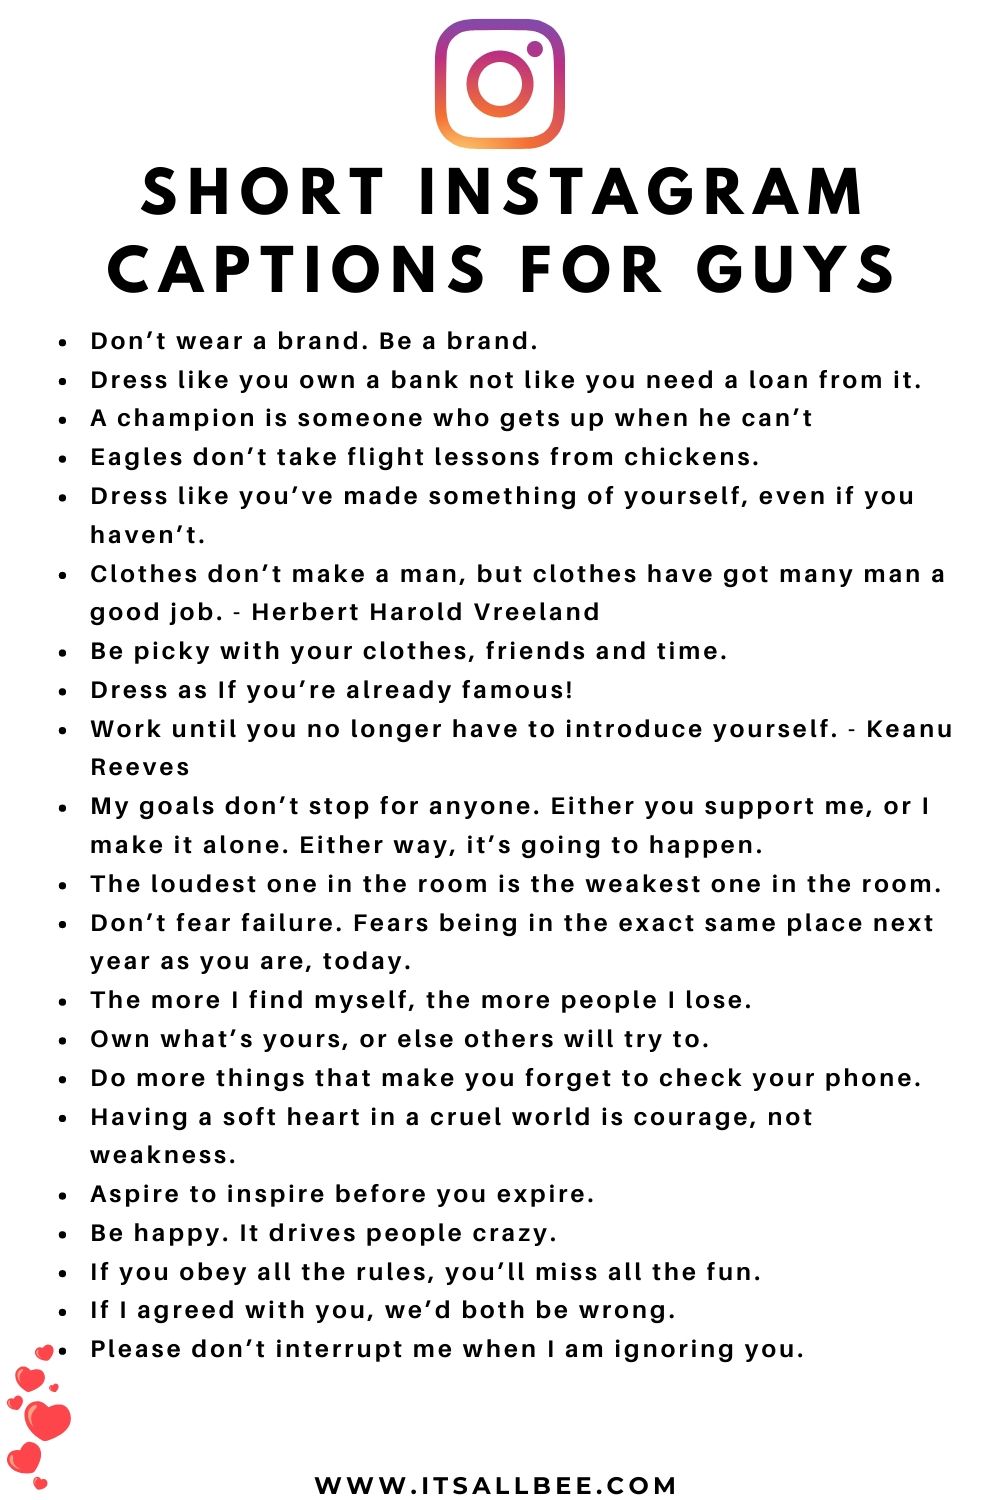 Short Instagram Captions For Guys 